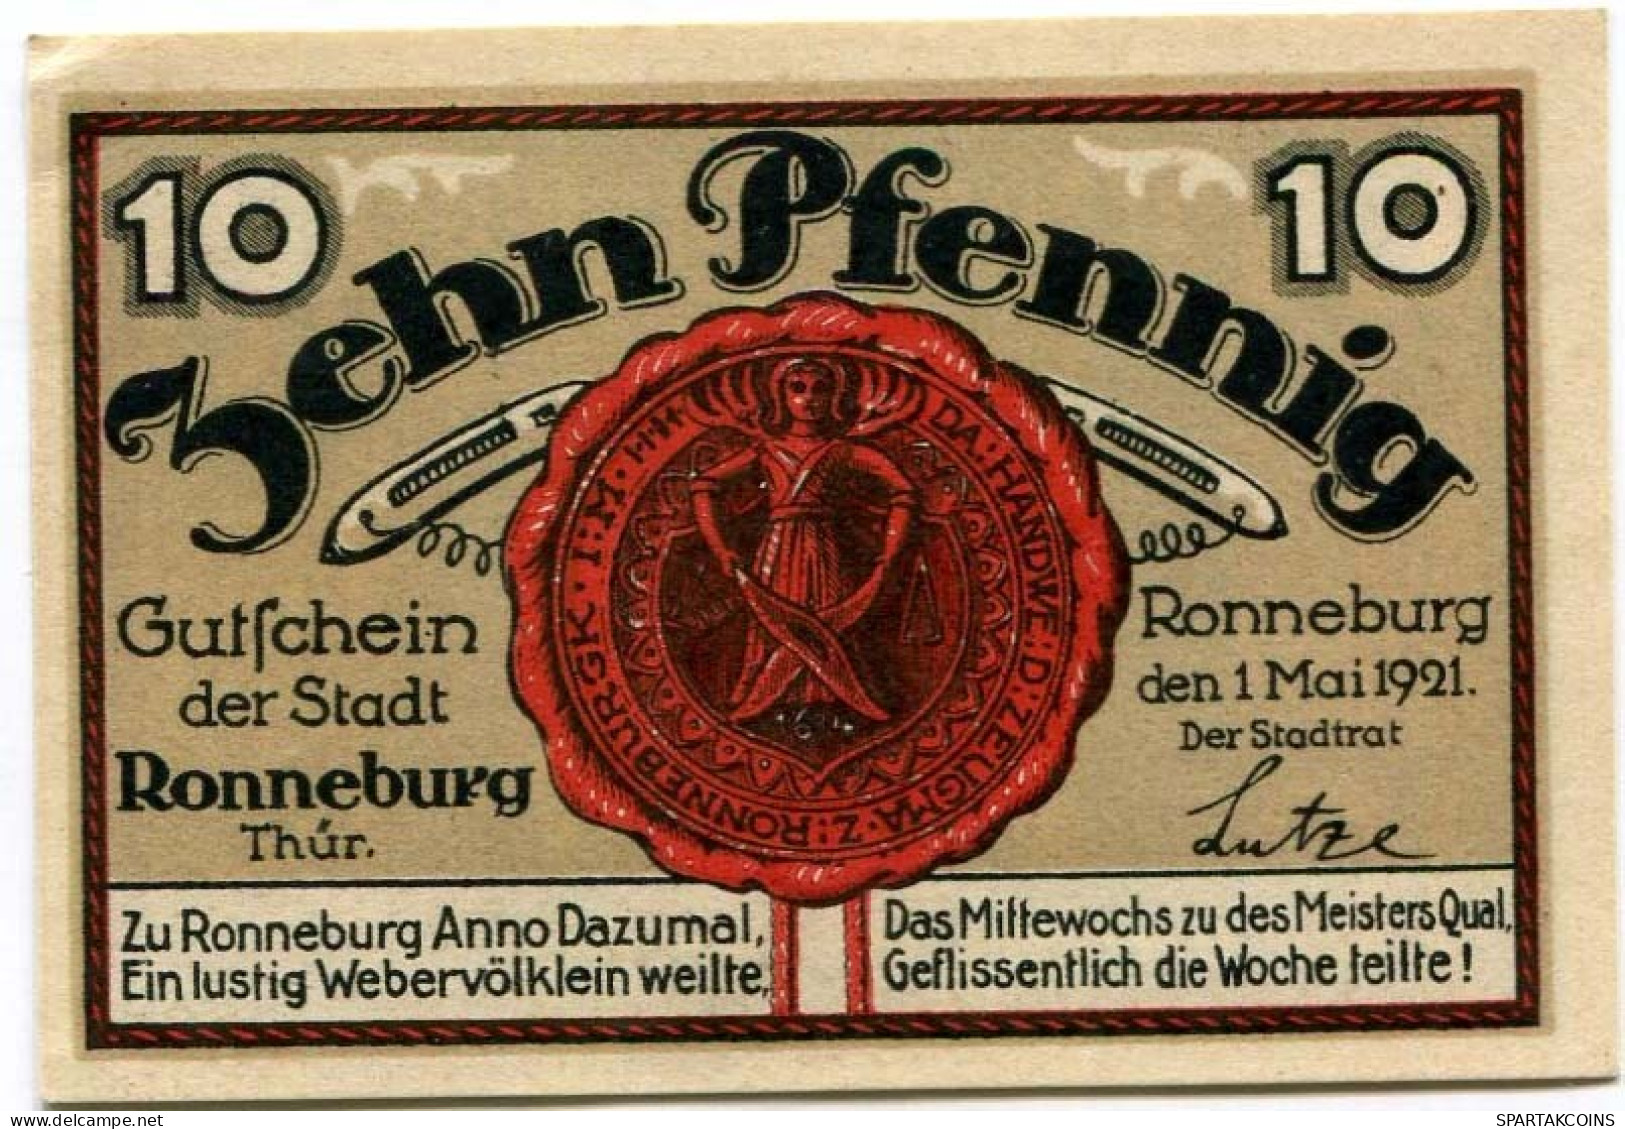 10 PFENNIG 1921 Stadt RONNEBURG Thuringia DEUTSCHLAND Notgeld Papiergeld Banknote #PL940 - [11] Local Banknote Issues